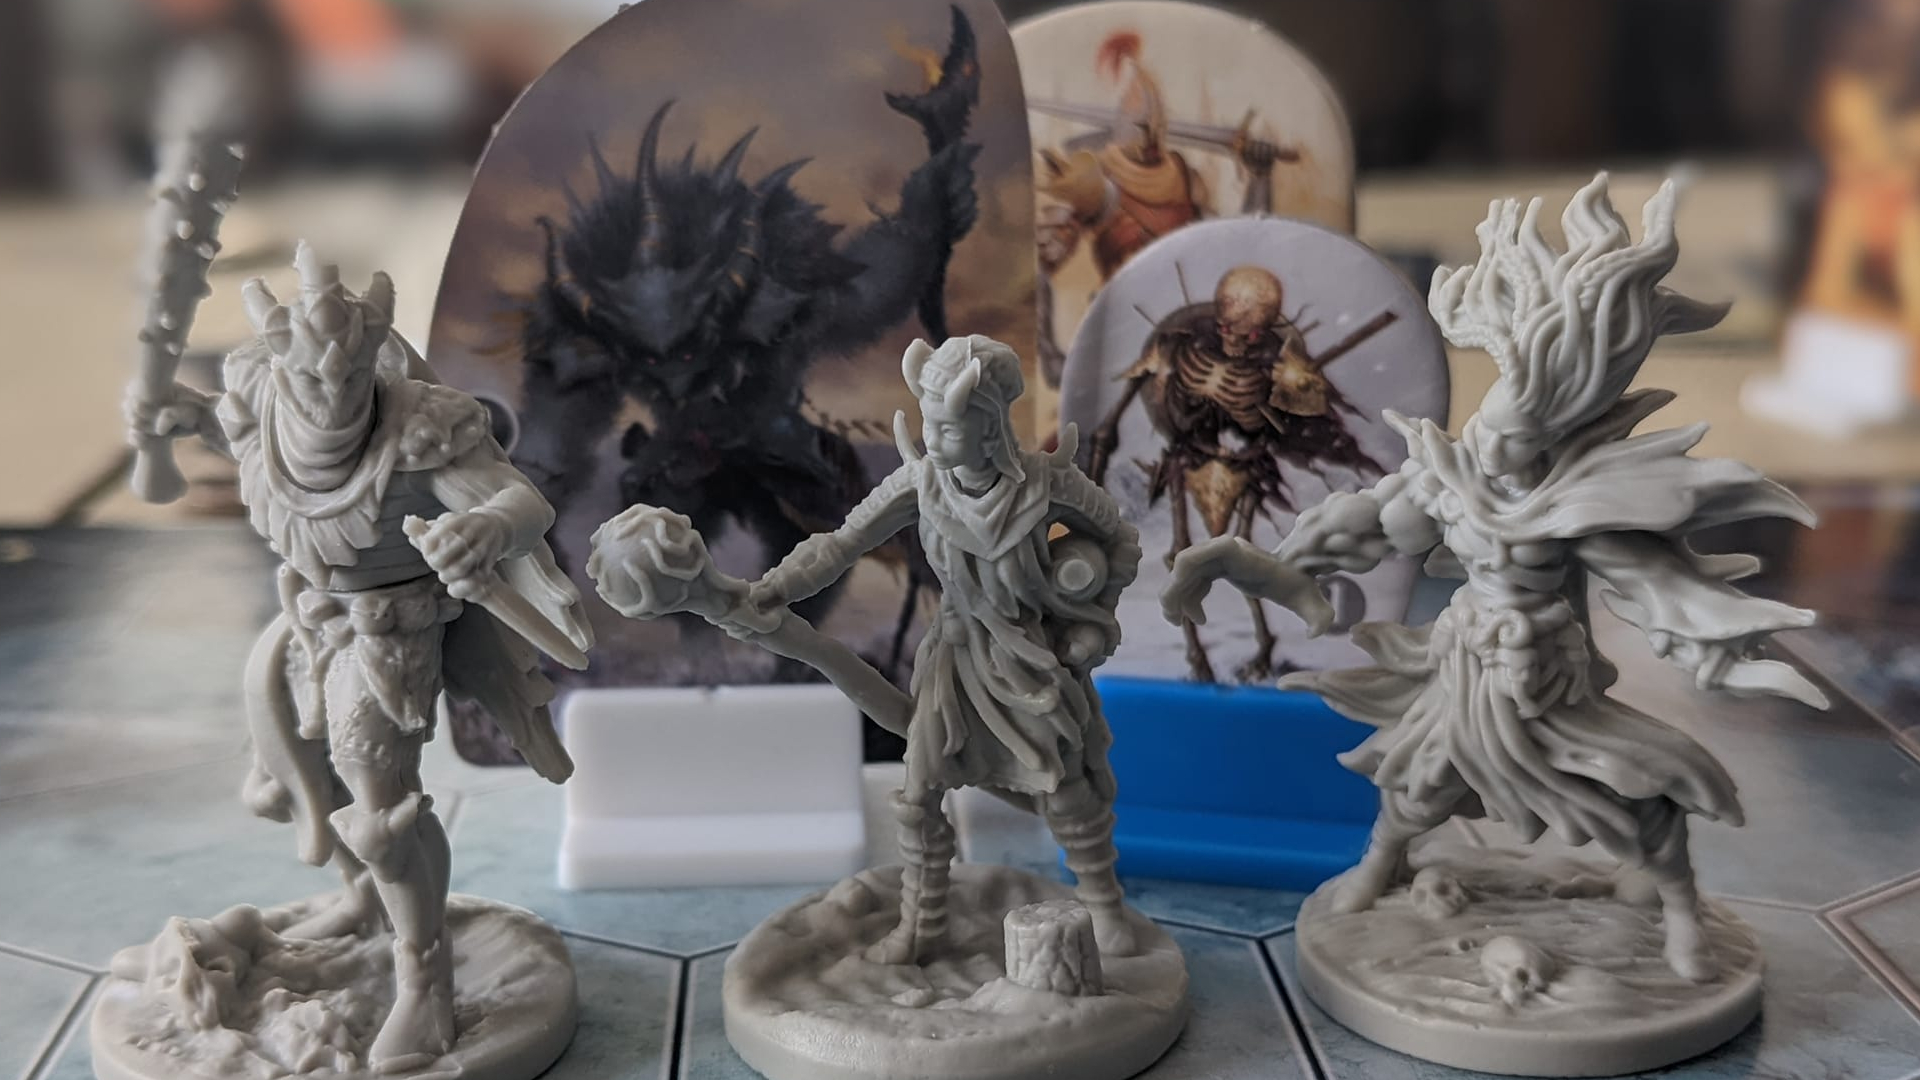 Trois figurines de Frosthaven sont alignées sur un tableau devant des monstres en carton